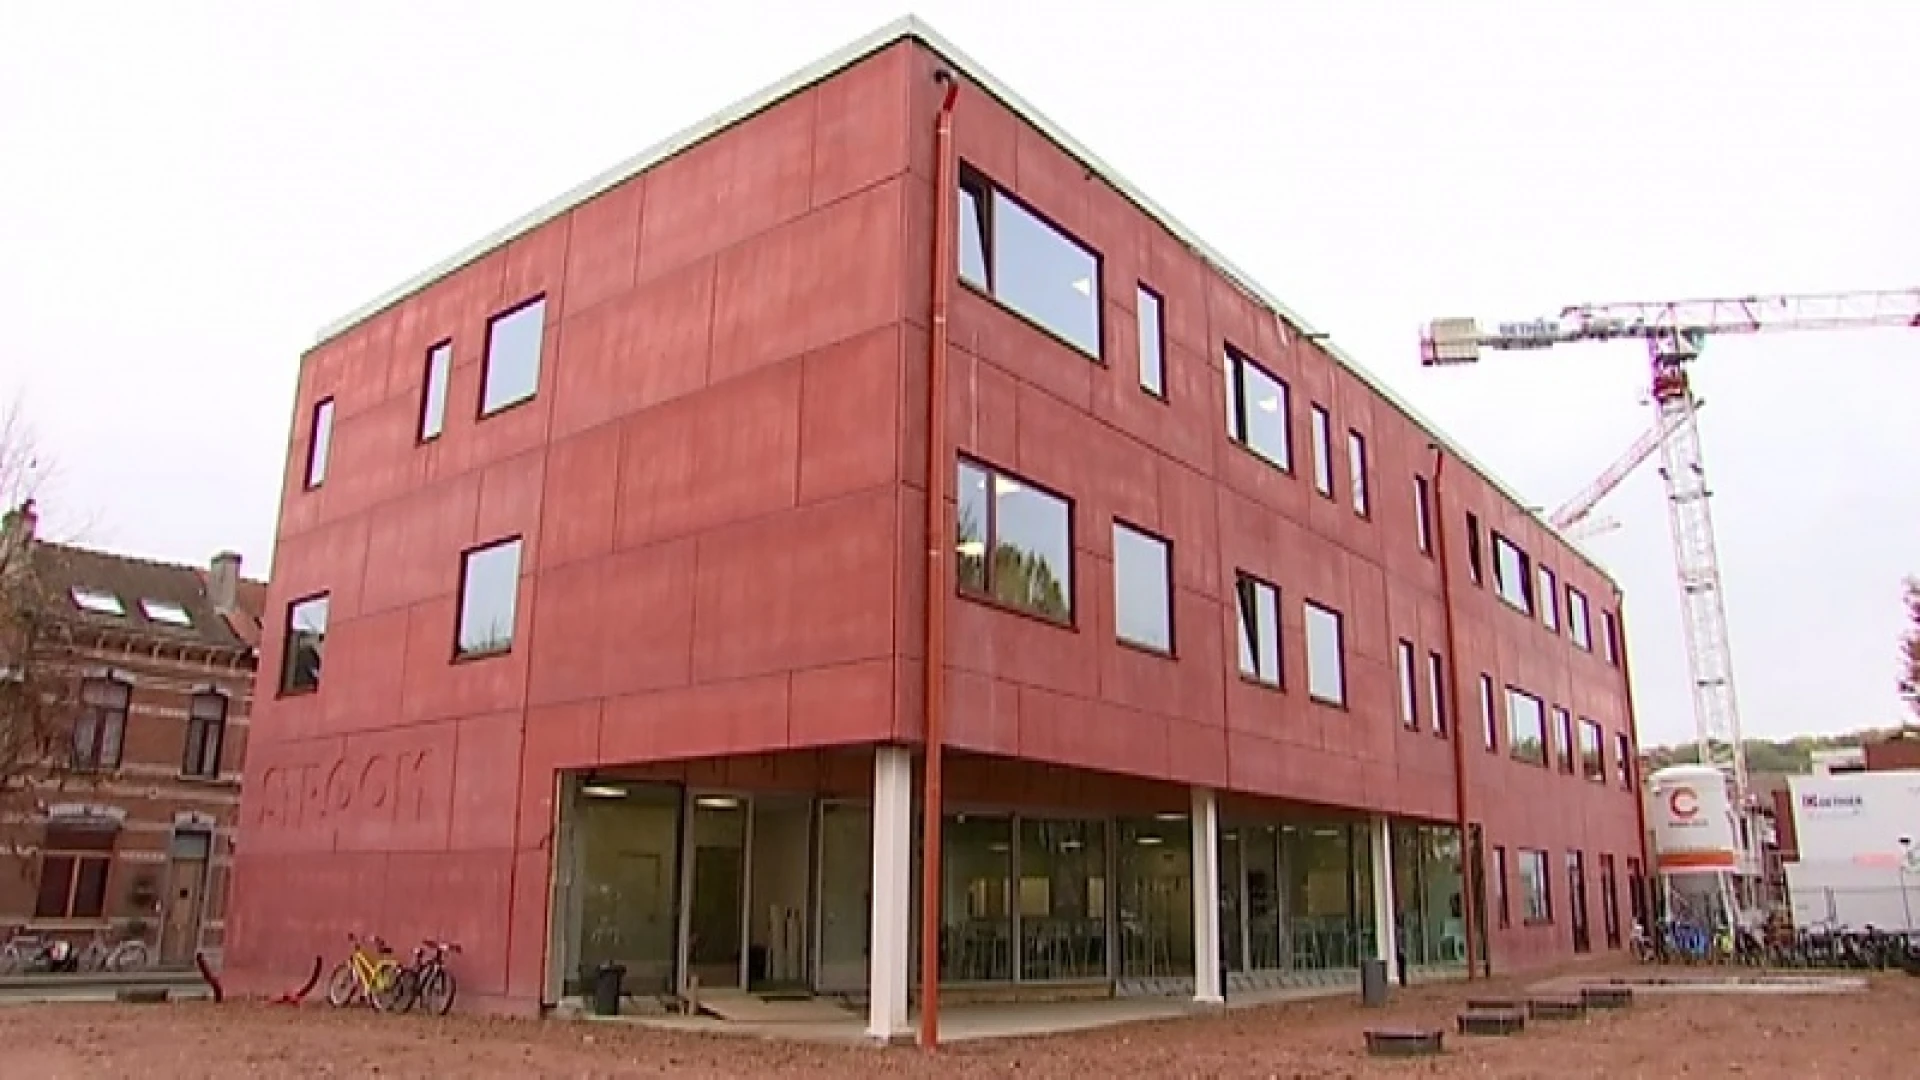 Leerlingen van school Stroom in Leuven eindelijk verhuisd naar nieuwe gebouwen